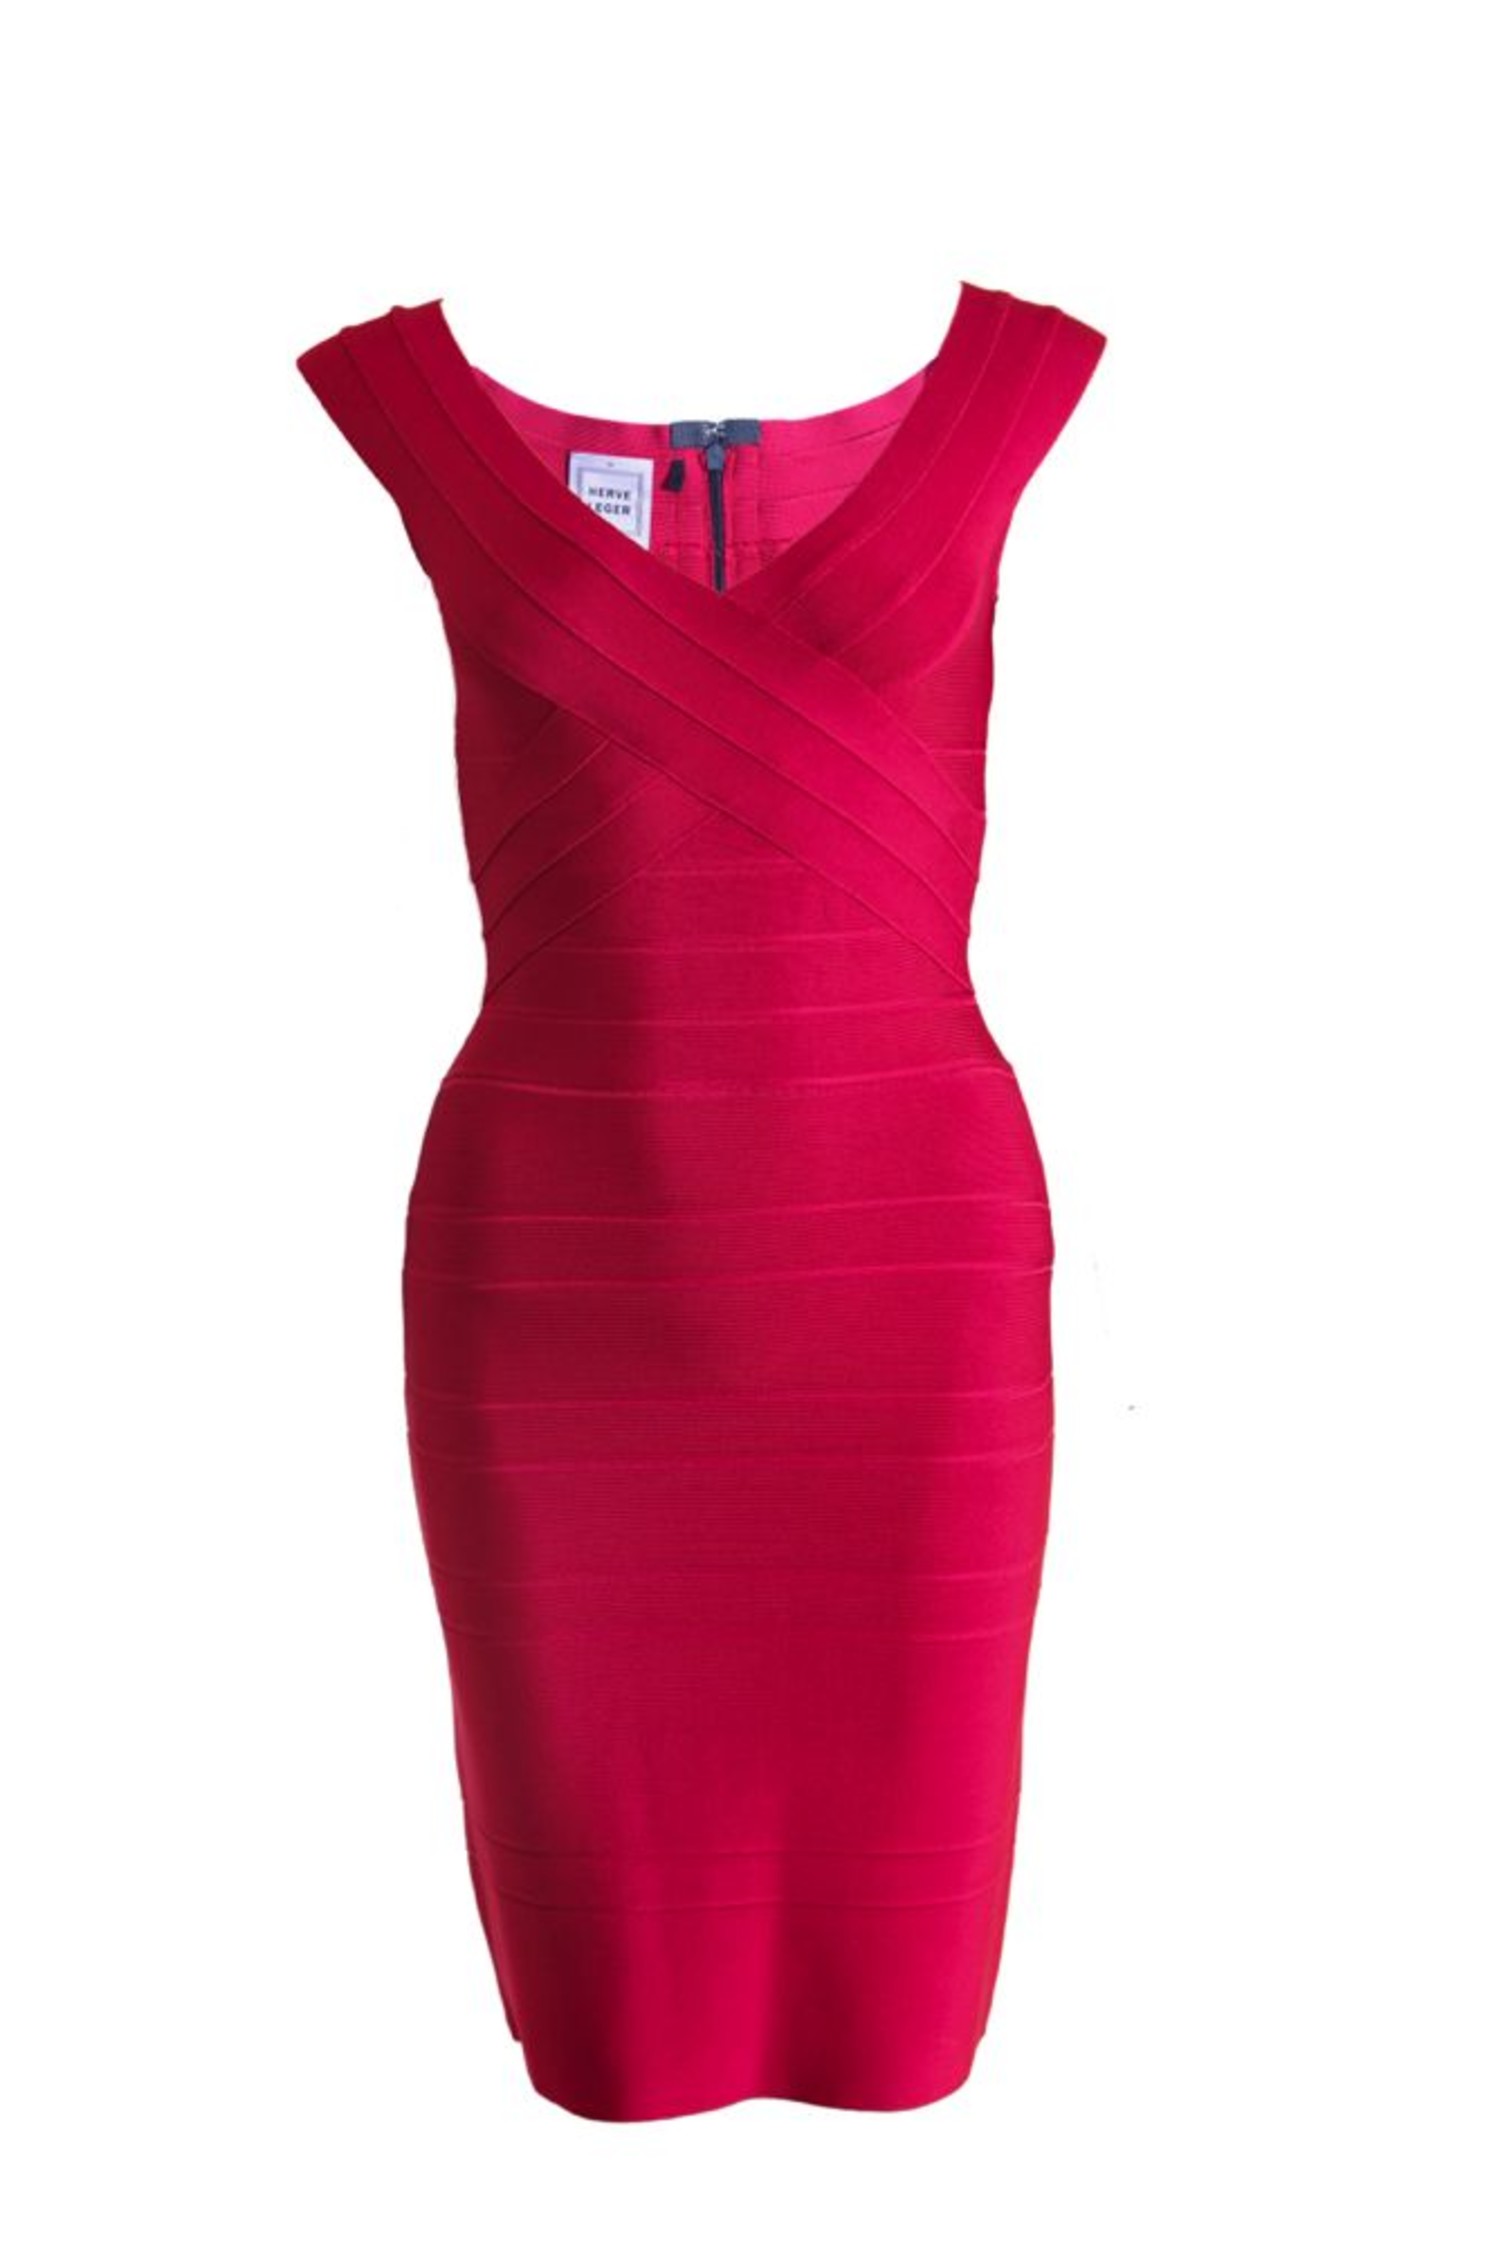 https://cdn.webshopapp.com/shops/89710/files/88495514/1500x4000x3/herve-leger-herve-leger-rasperry-red-bodycon-dress.jpg